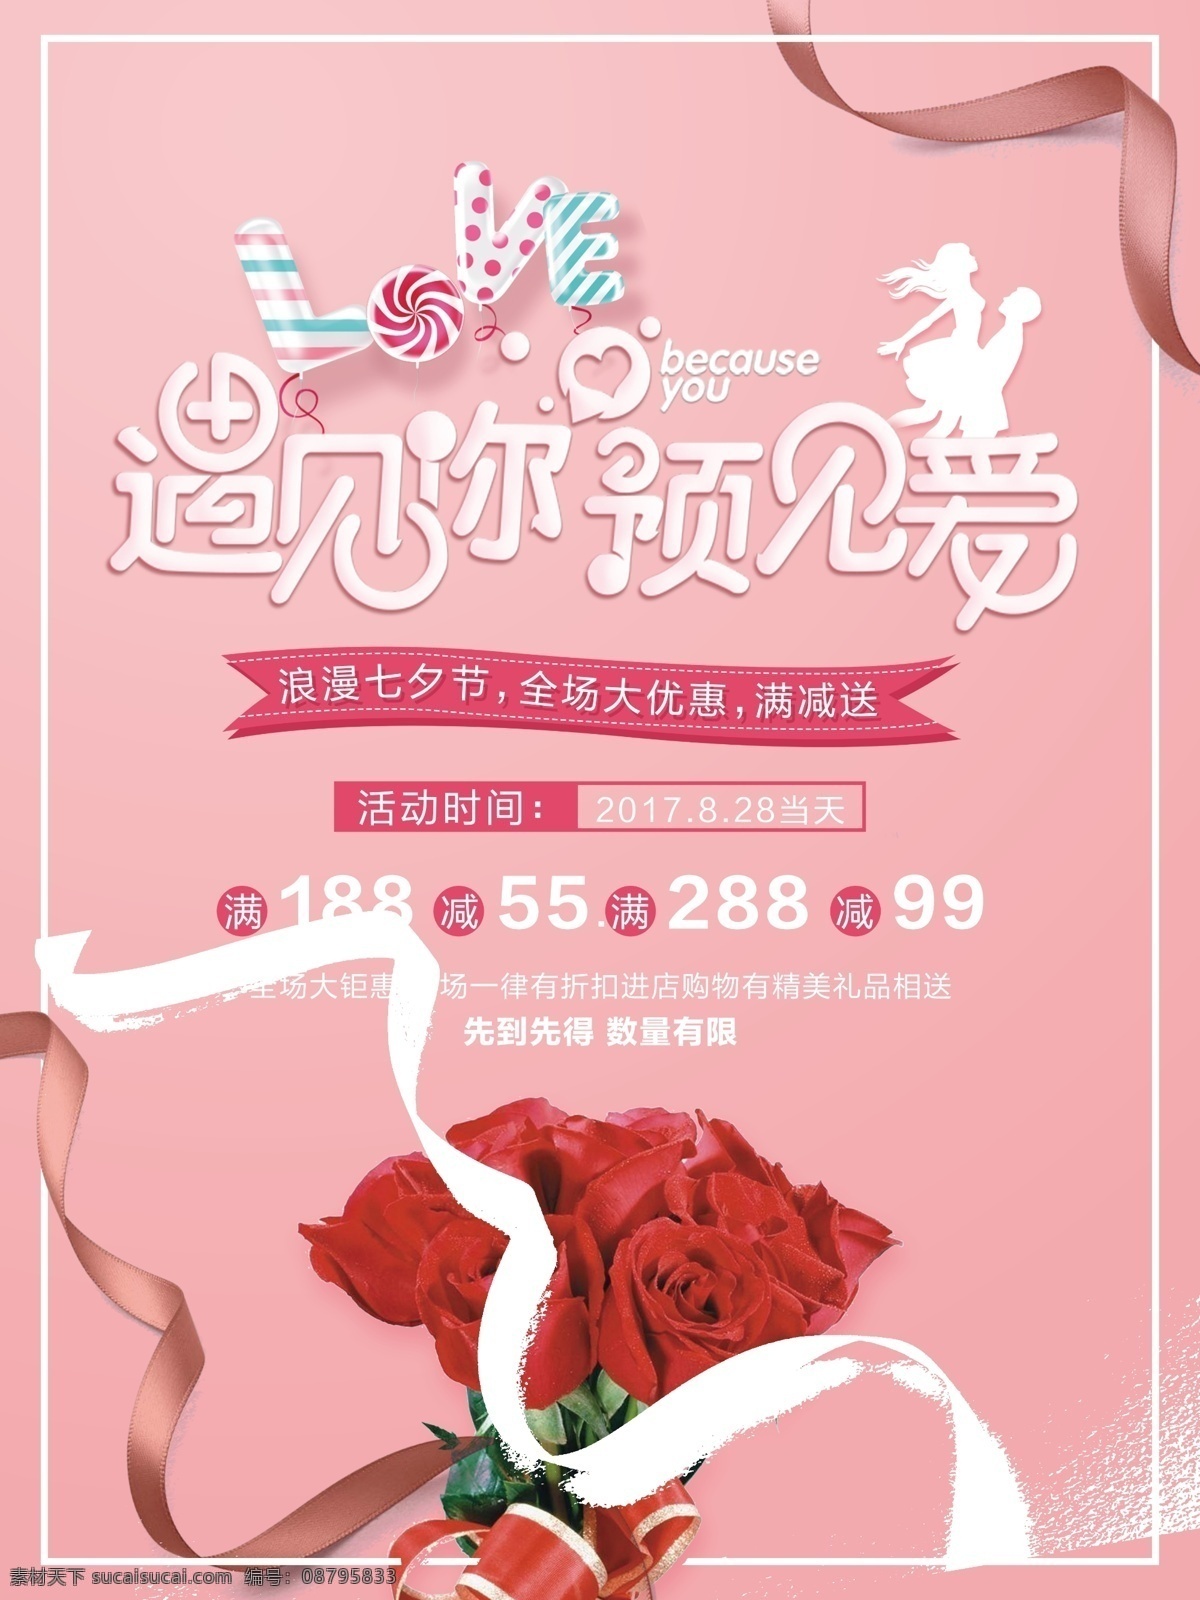 遇见你 遇见 七夕 宣传海报 遇见爱 love 糖果 玫瑰 粉色 促销 优惠 满减